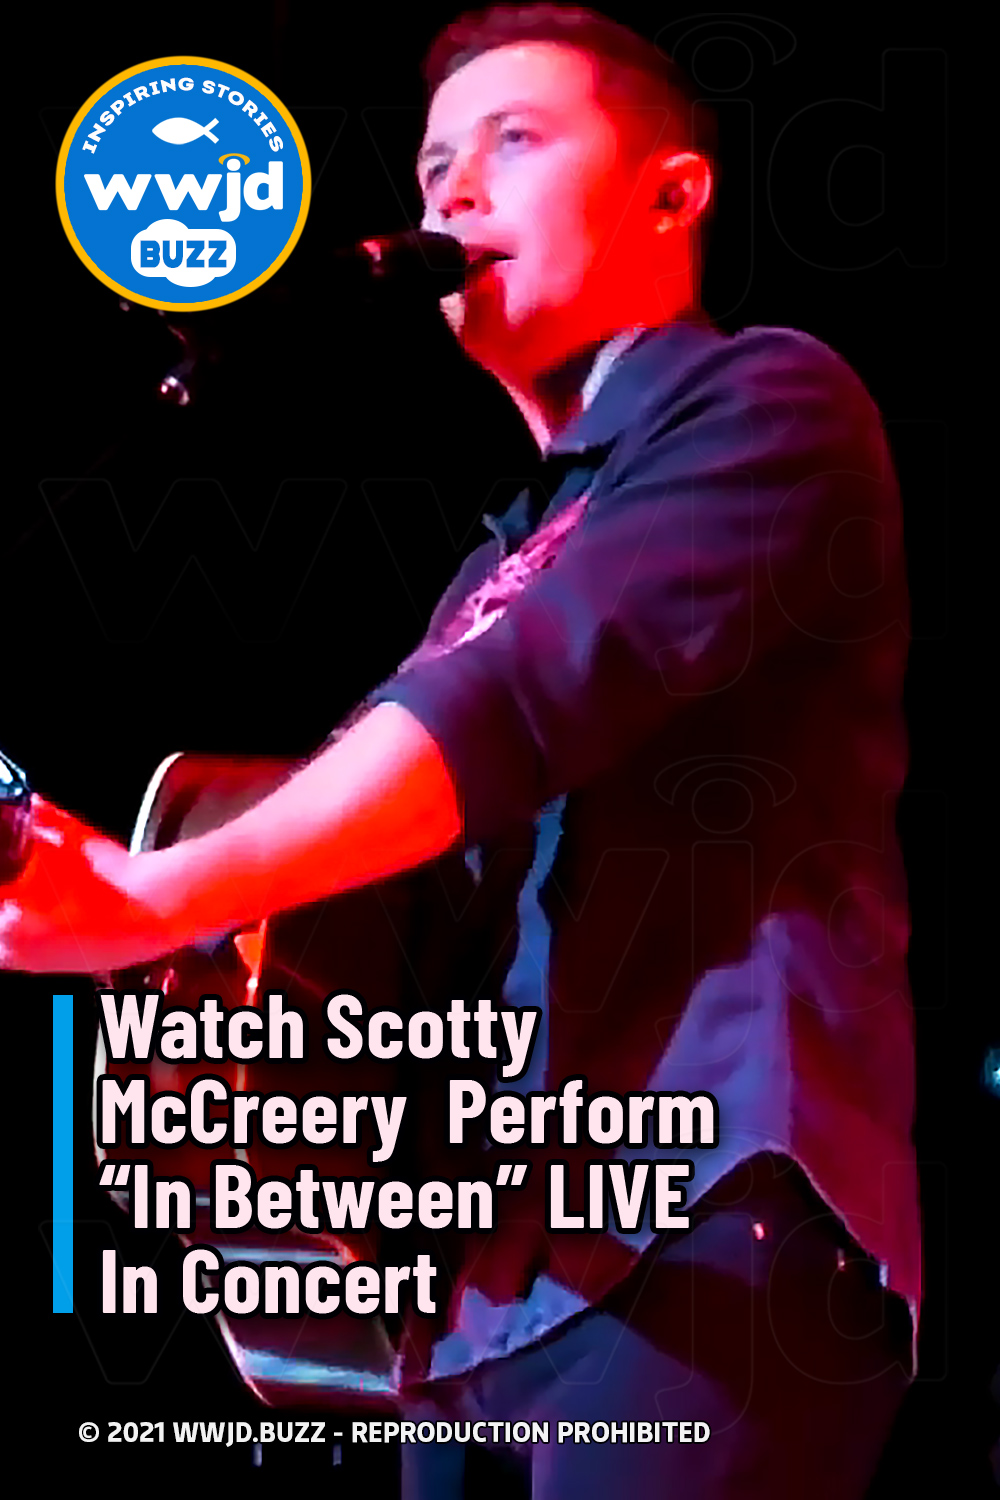 Watch Scotty McCreery  Perform “In Between” LIVE In Concert